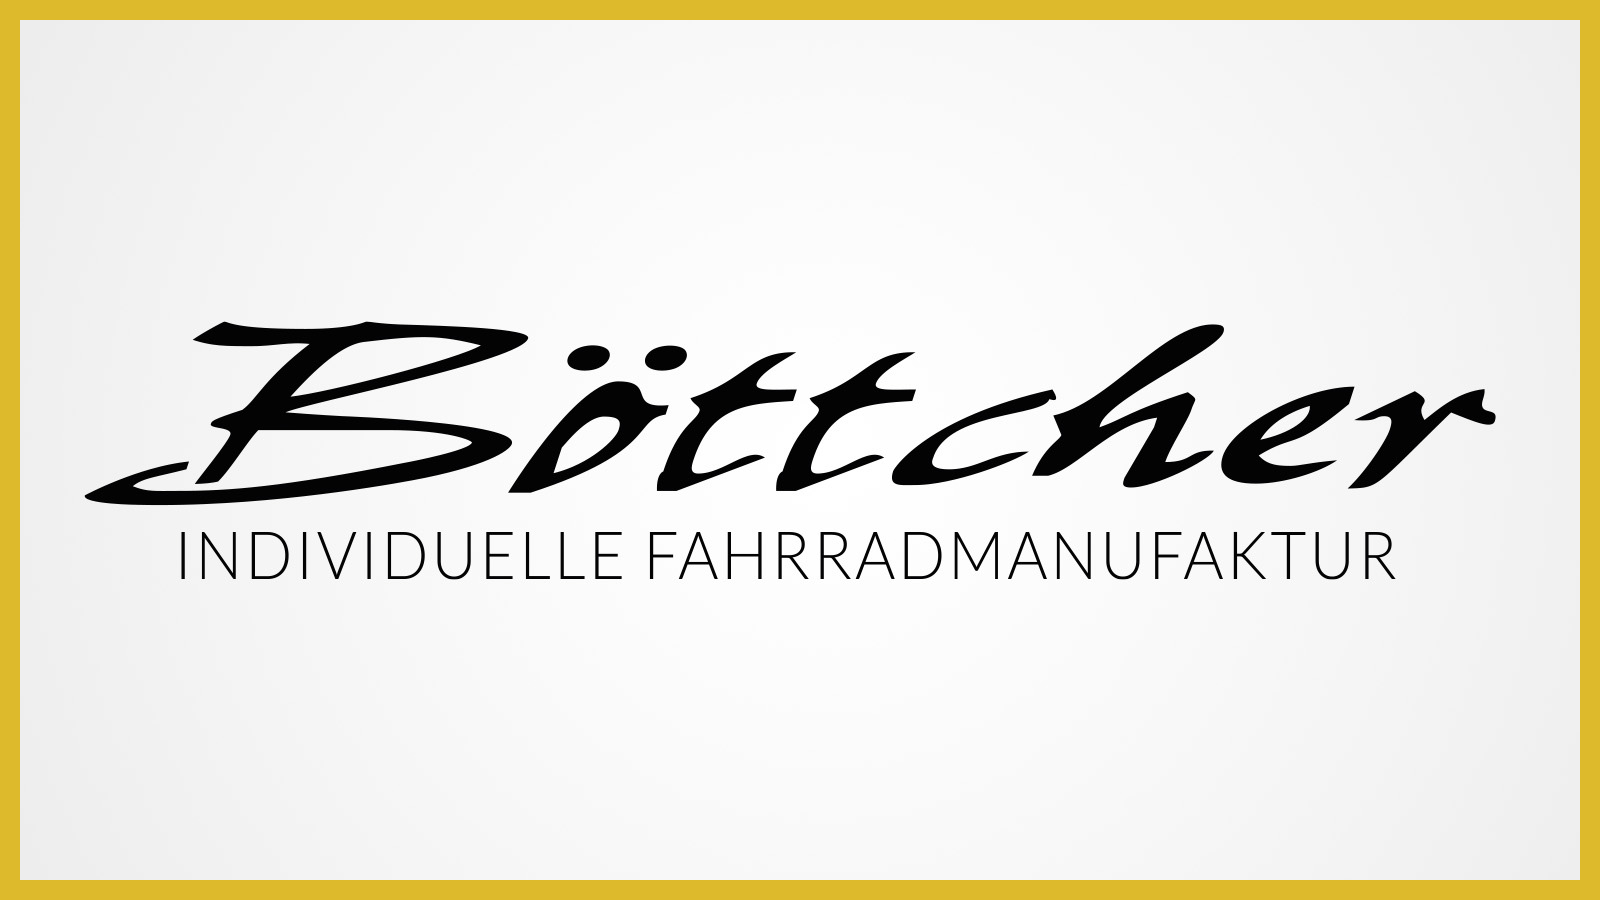 Das Böttcher-Logo